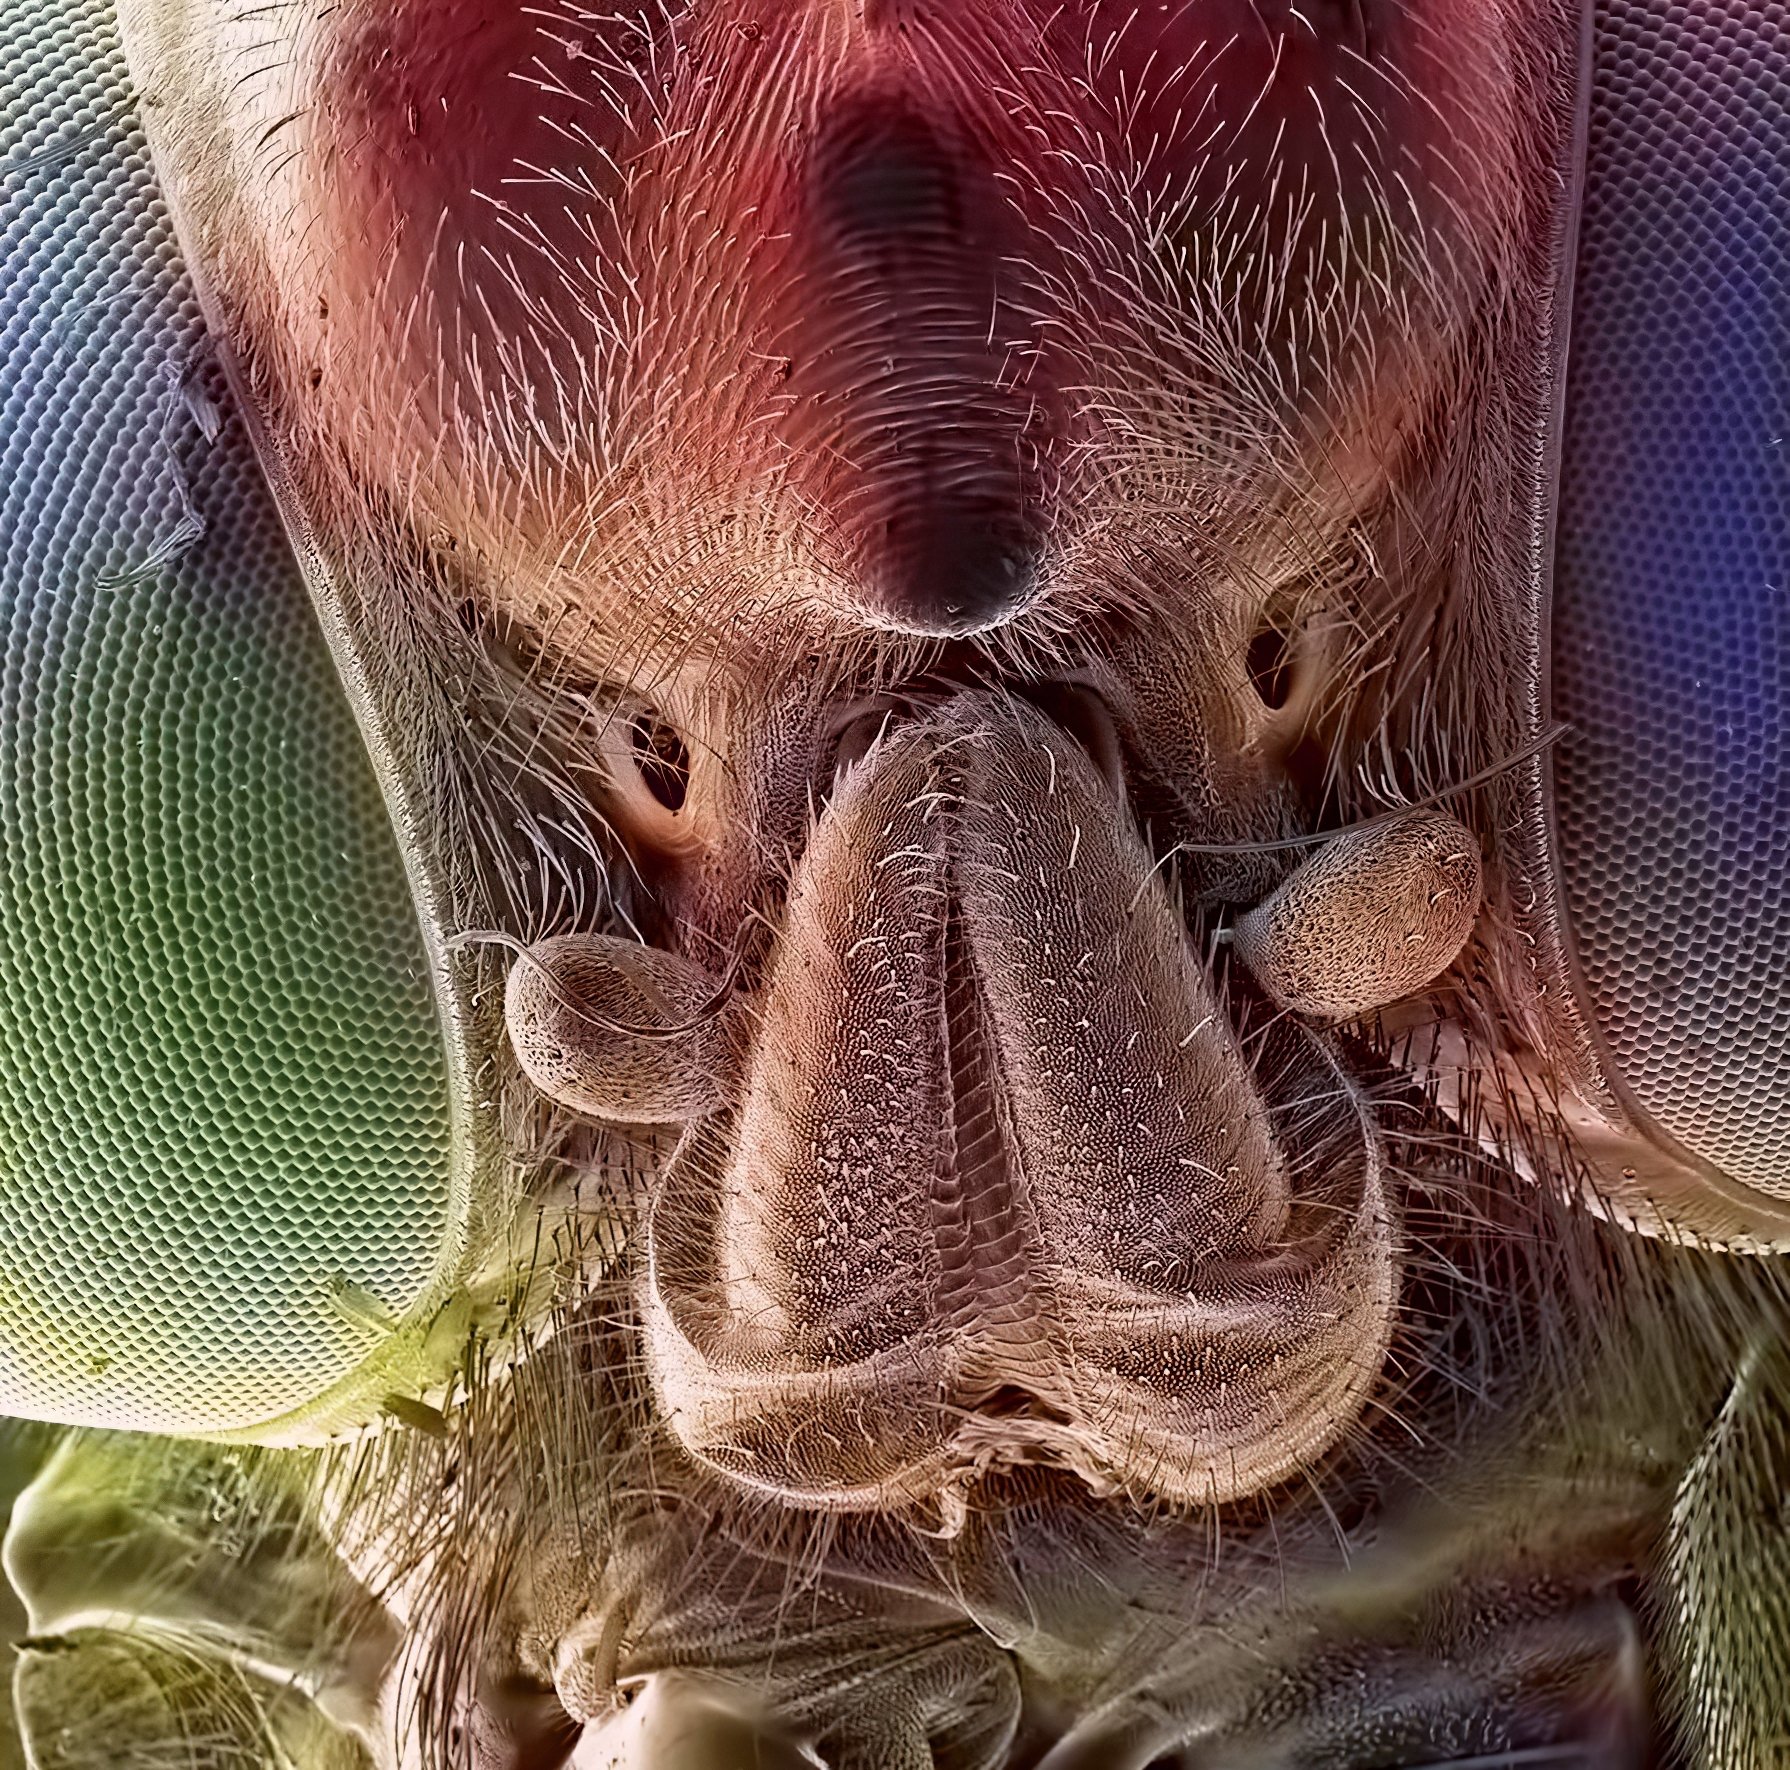 Лицо мухи под микроскопом фото